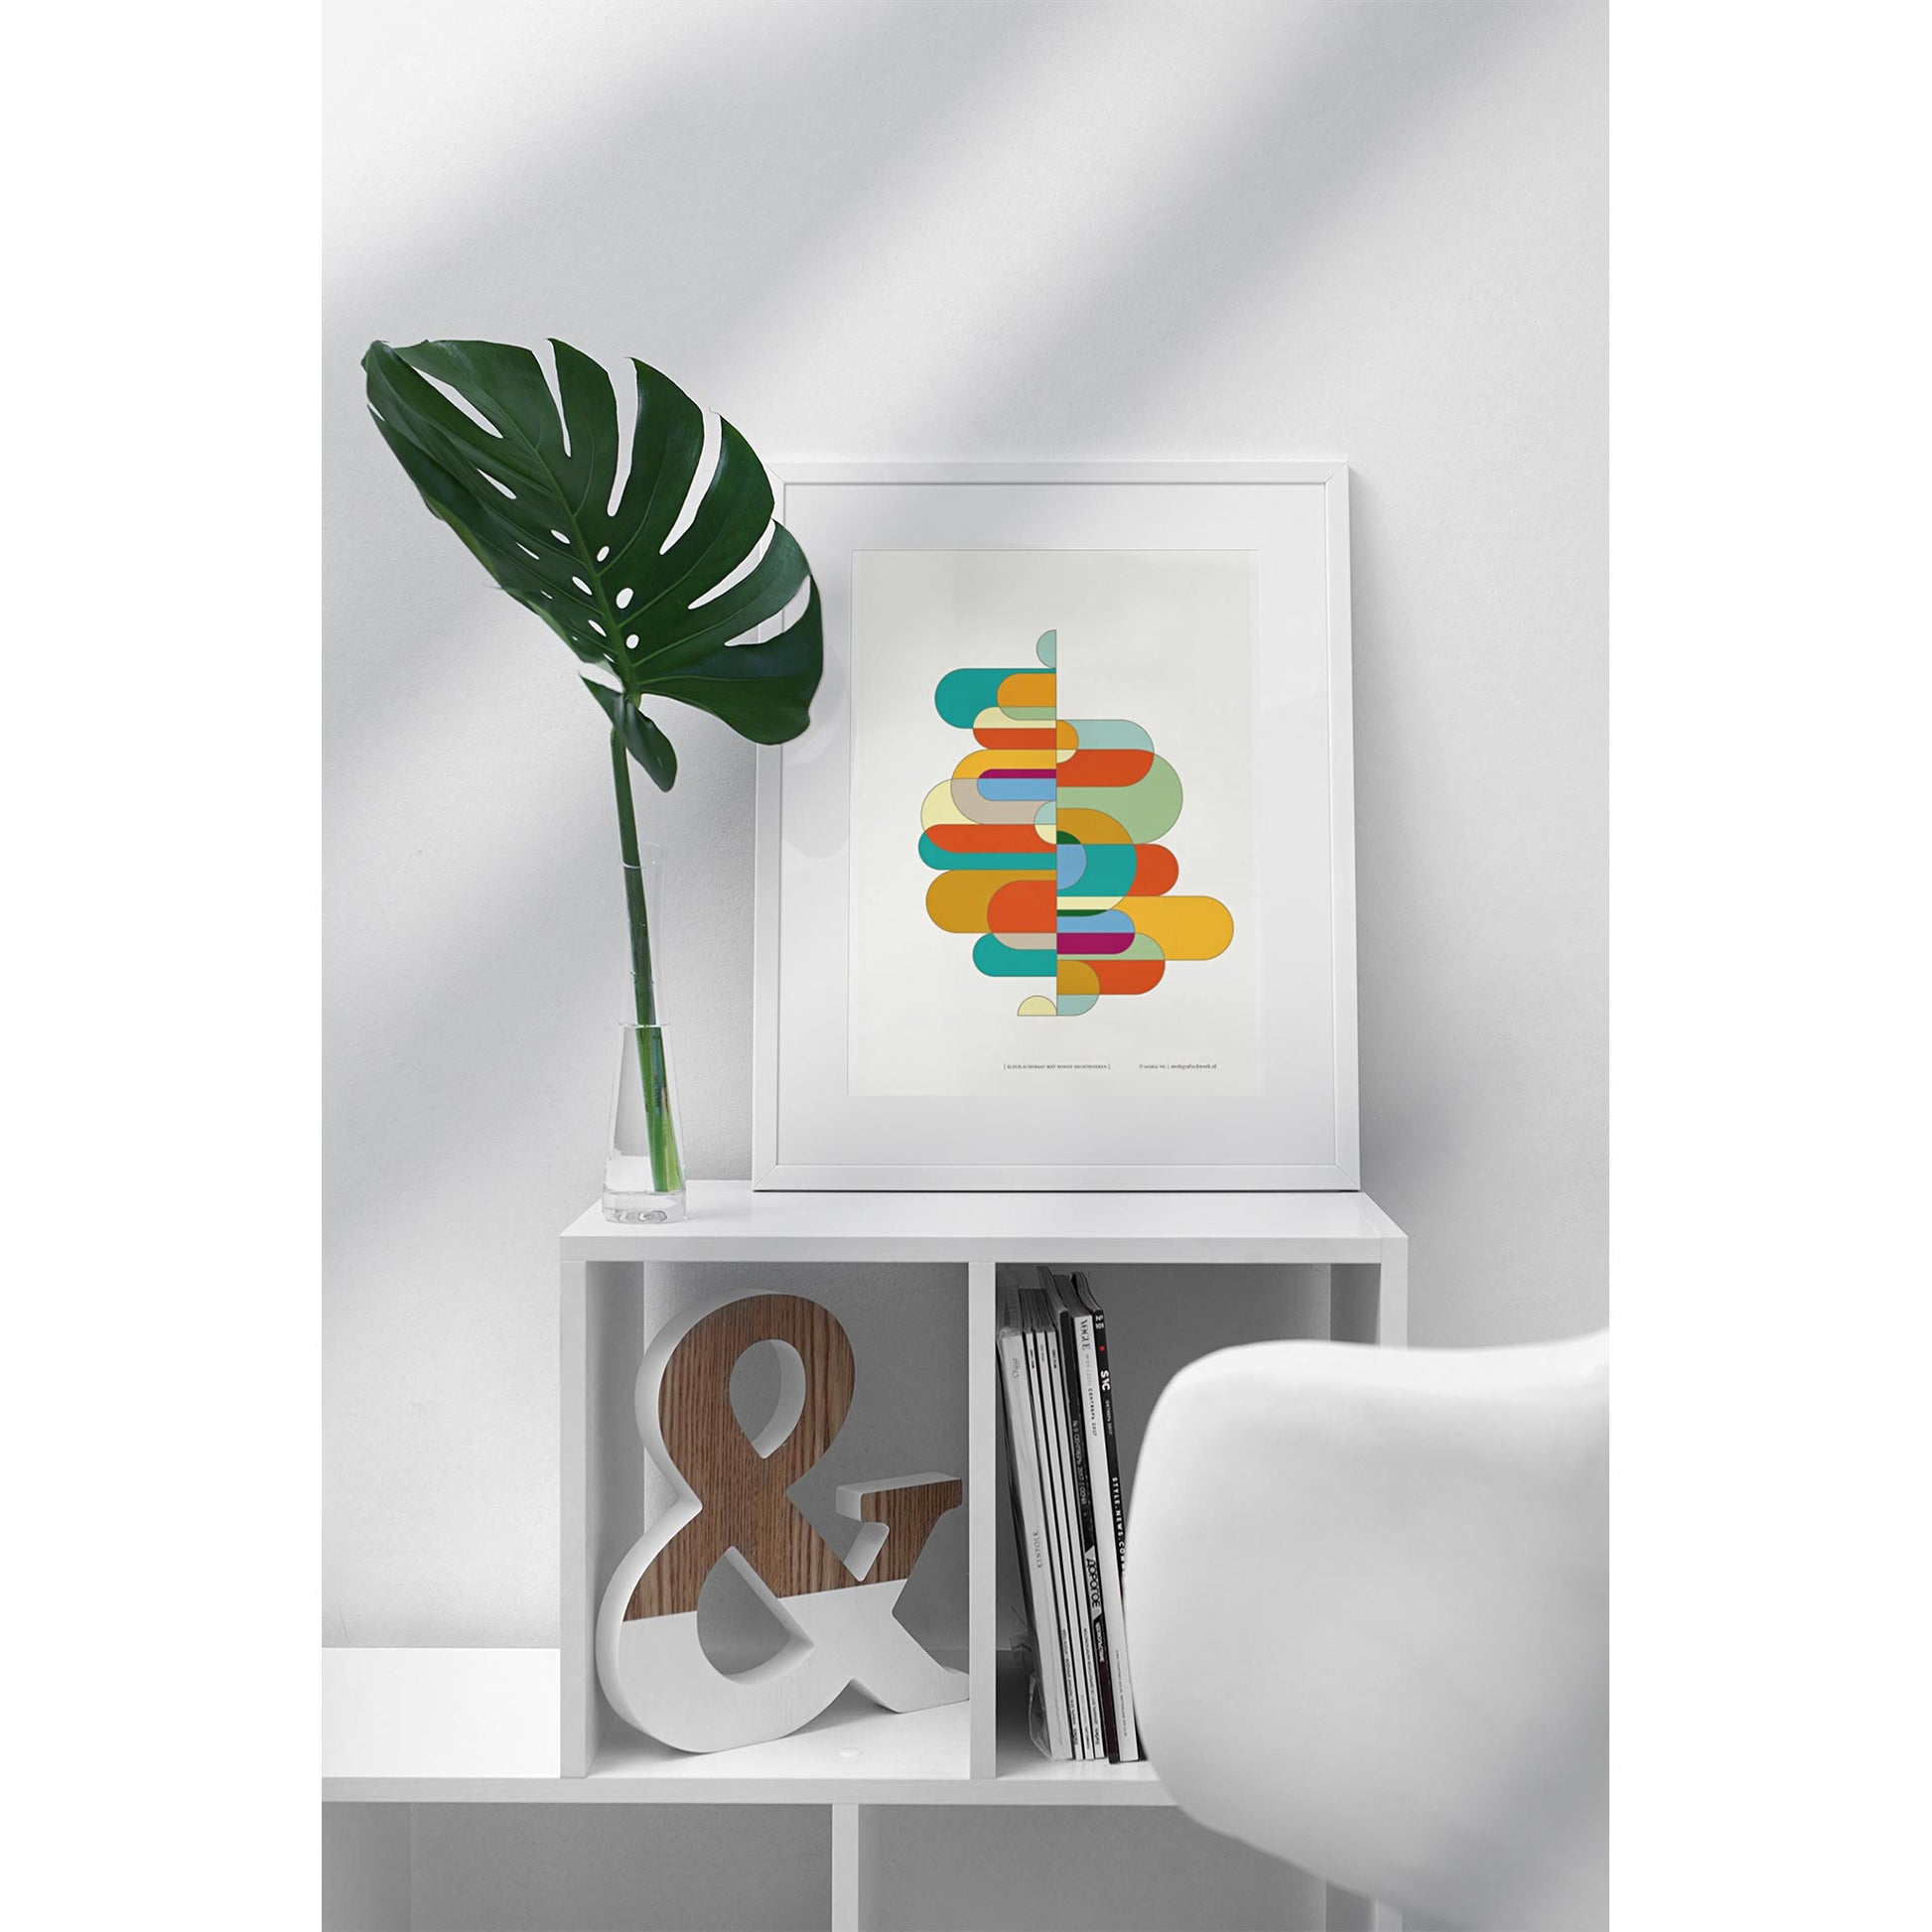 Productafbeelding poster "kleur-acrobaat met ronde rechthoeken" 2de impressie staande op een kastje in een interieur